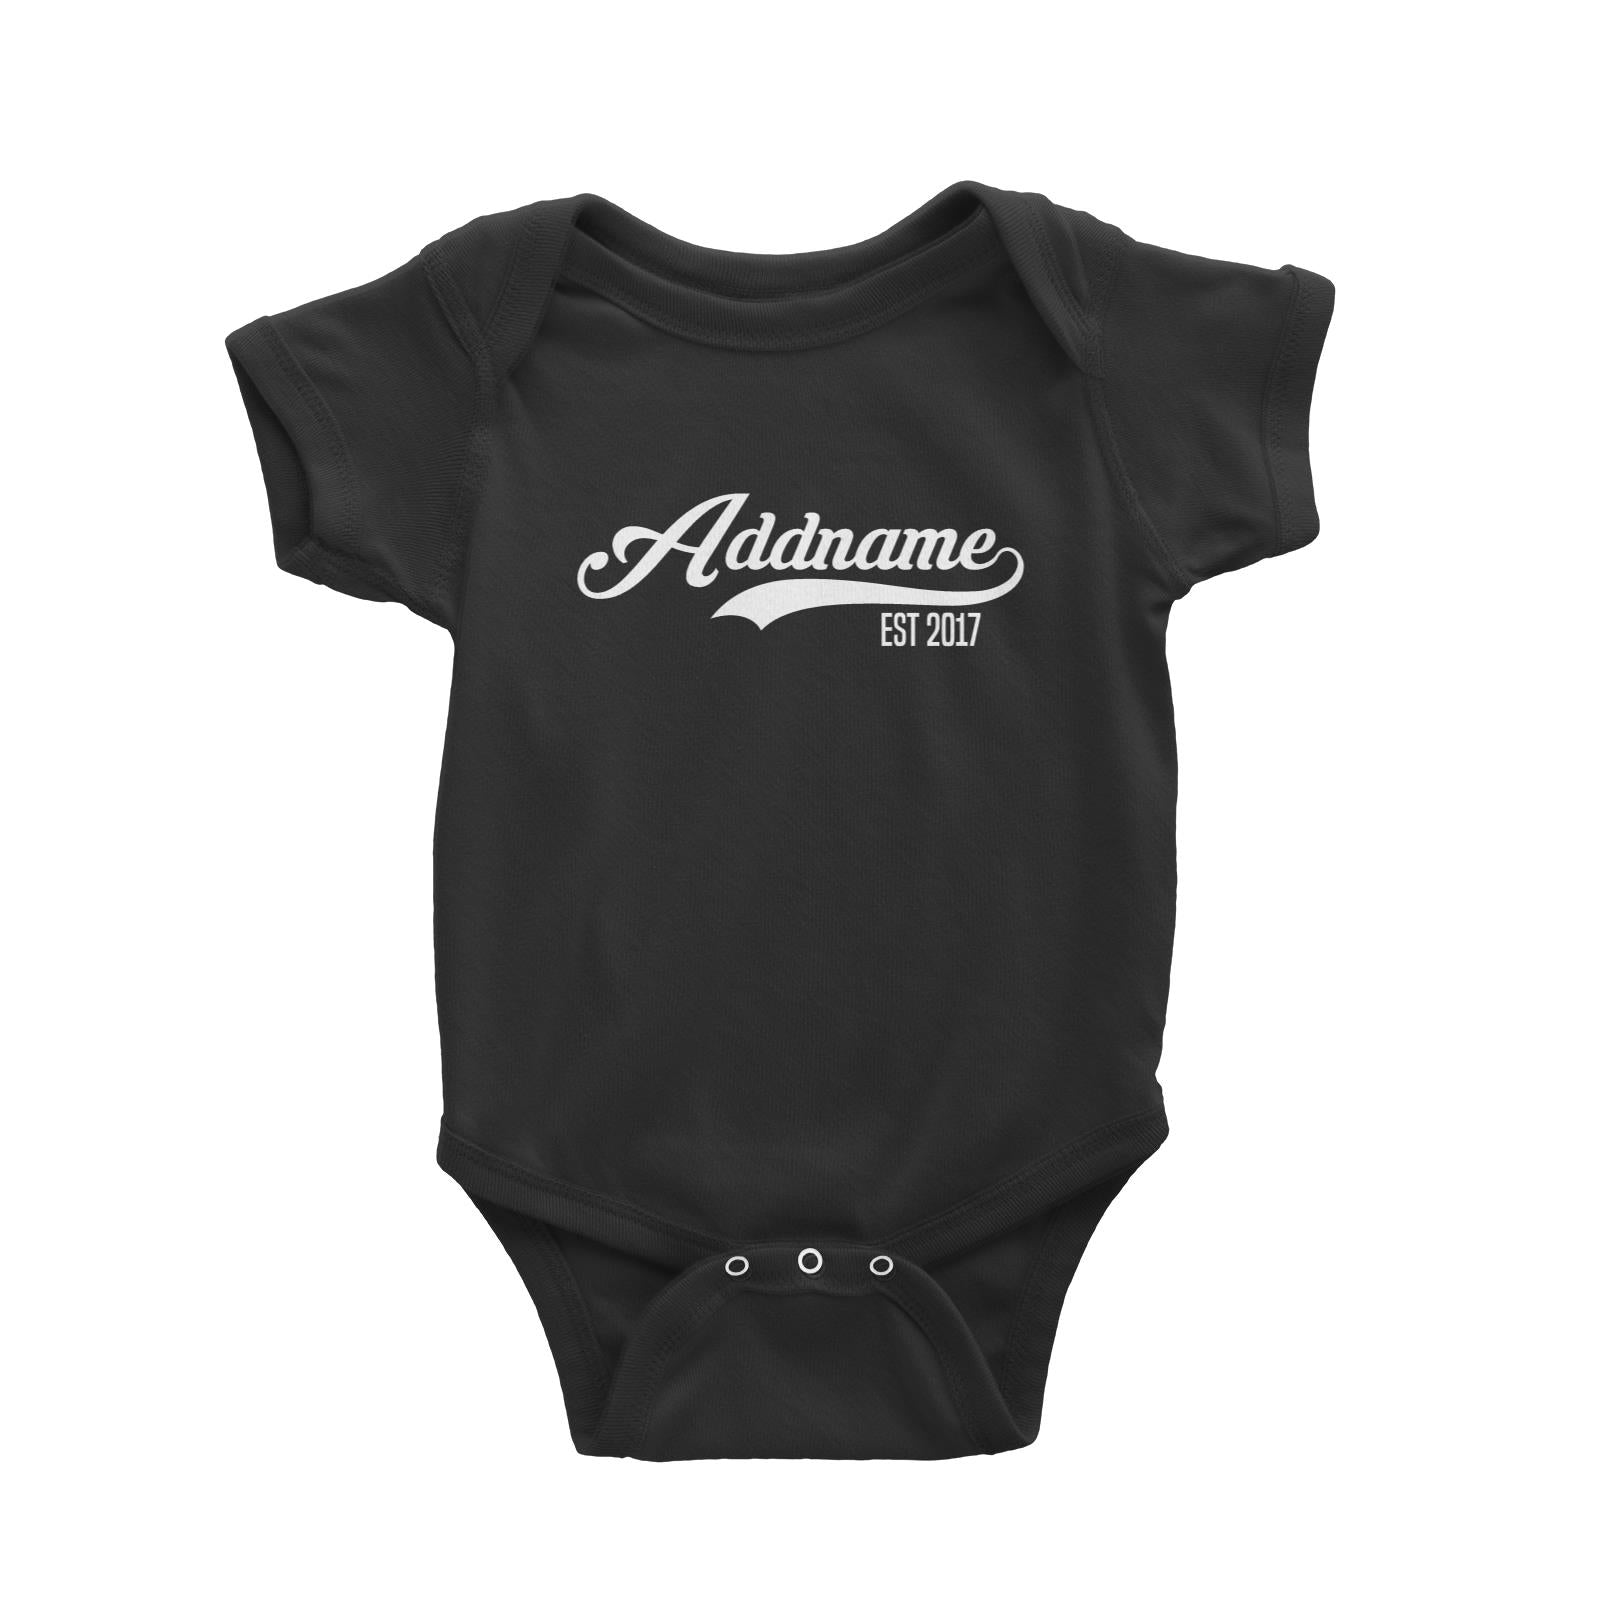 Retro Addname EST 2017 Baby Romper Personalizable Designs Basic Newborn